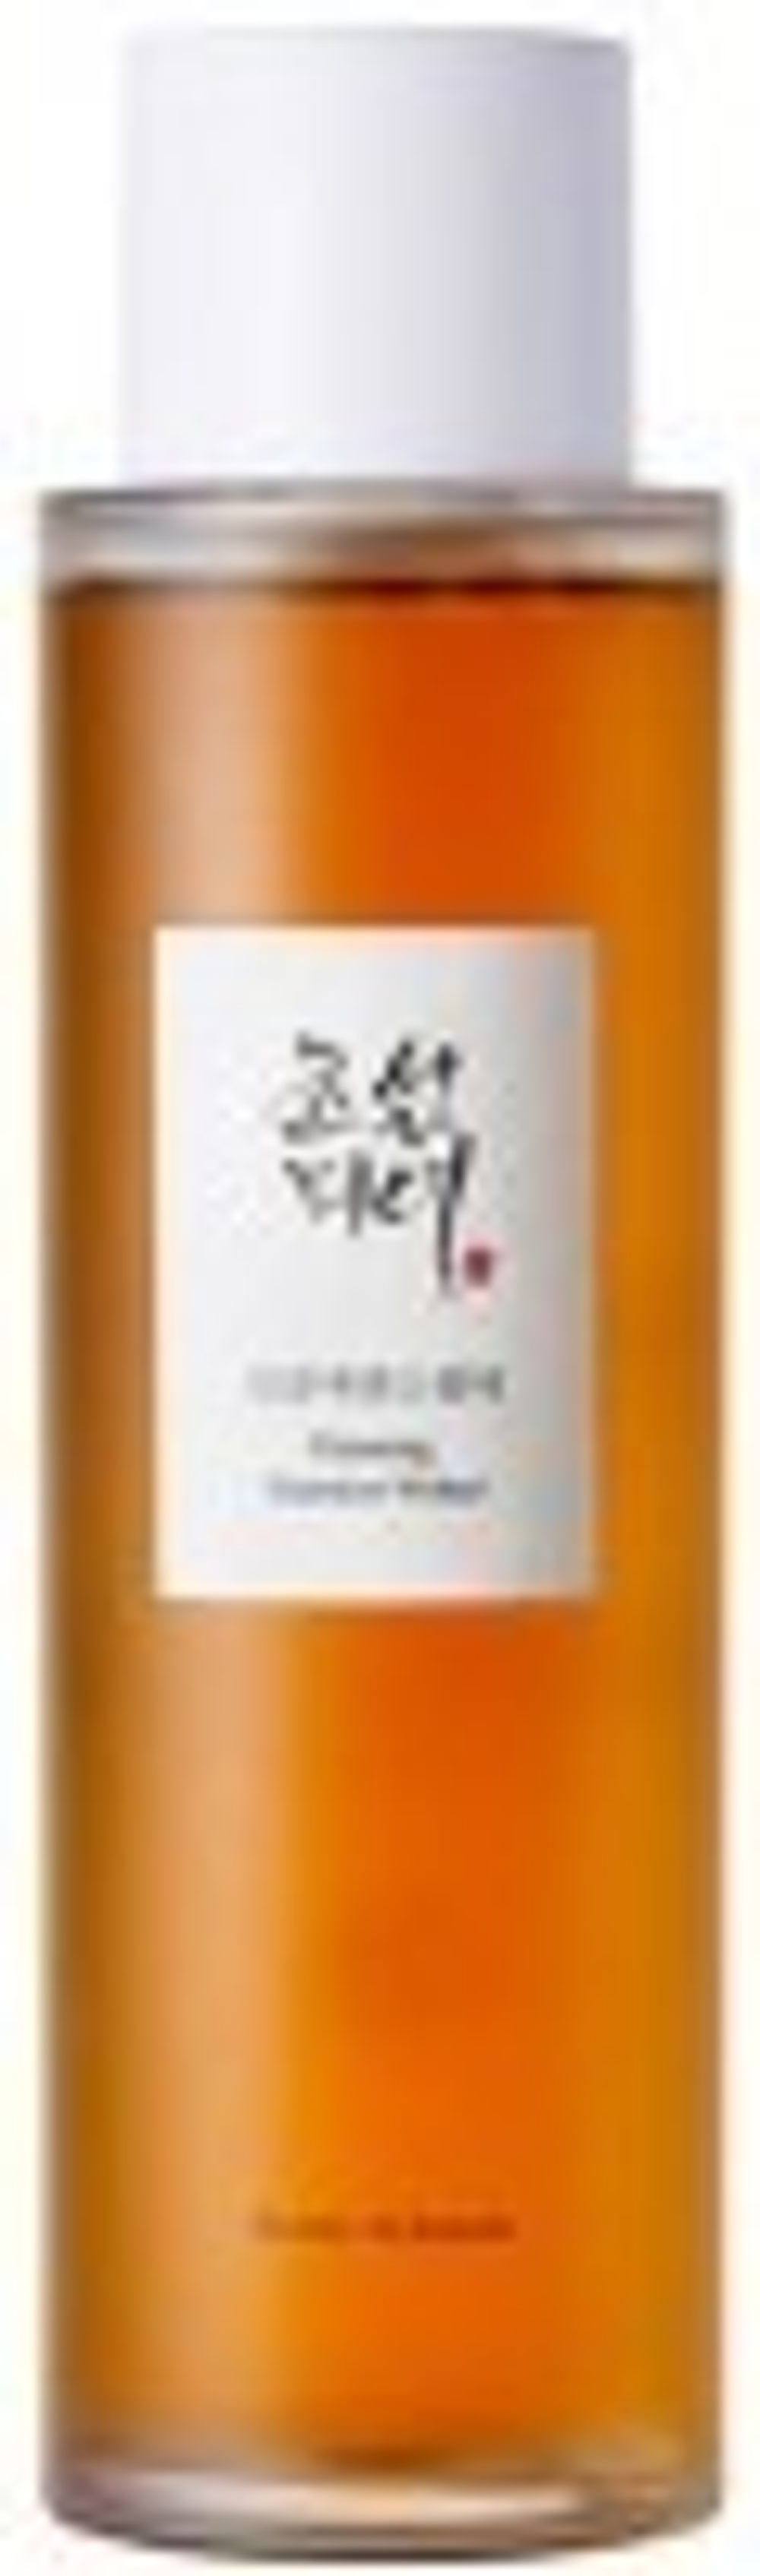 Эссенция с женьшенем Beauty of Joseon Ginseng Essence Water, 150 мл